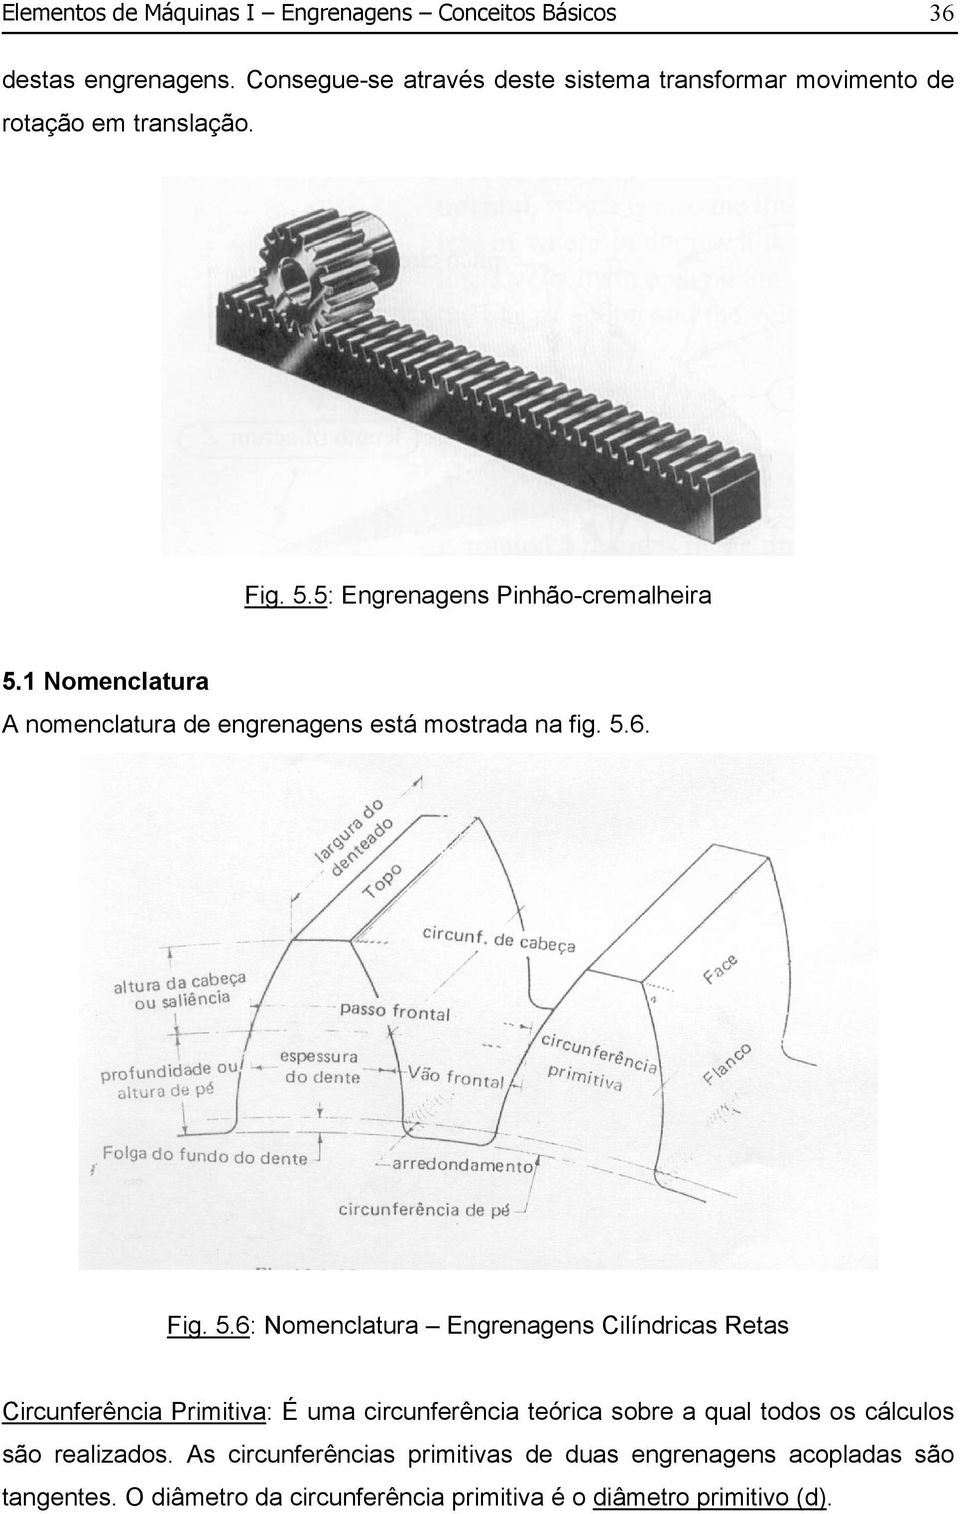 1 omenclatura A nomenclatura de engrenagens está mostrada na fig. 5.